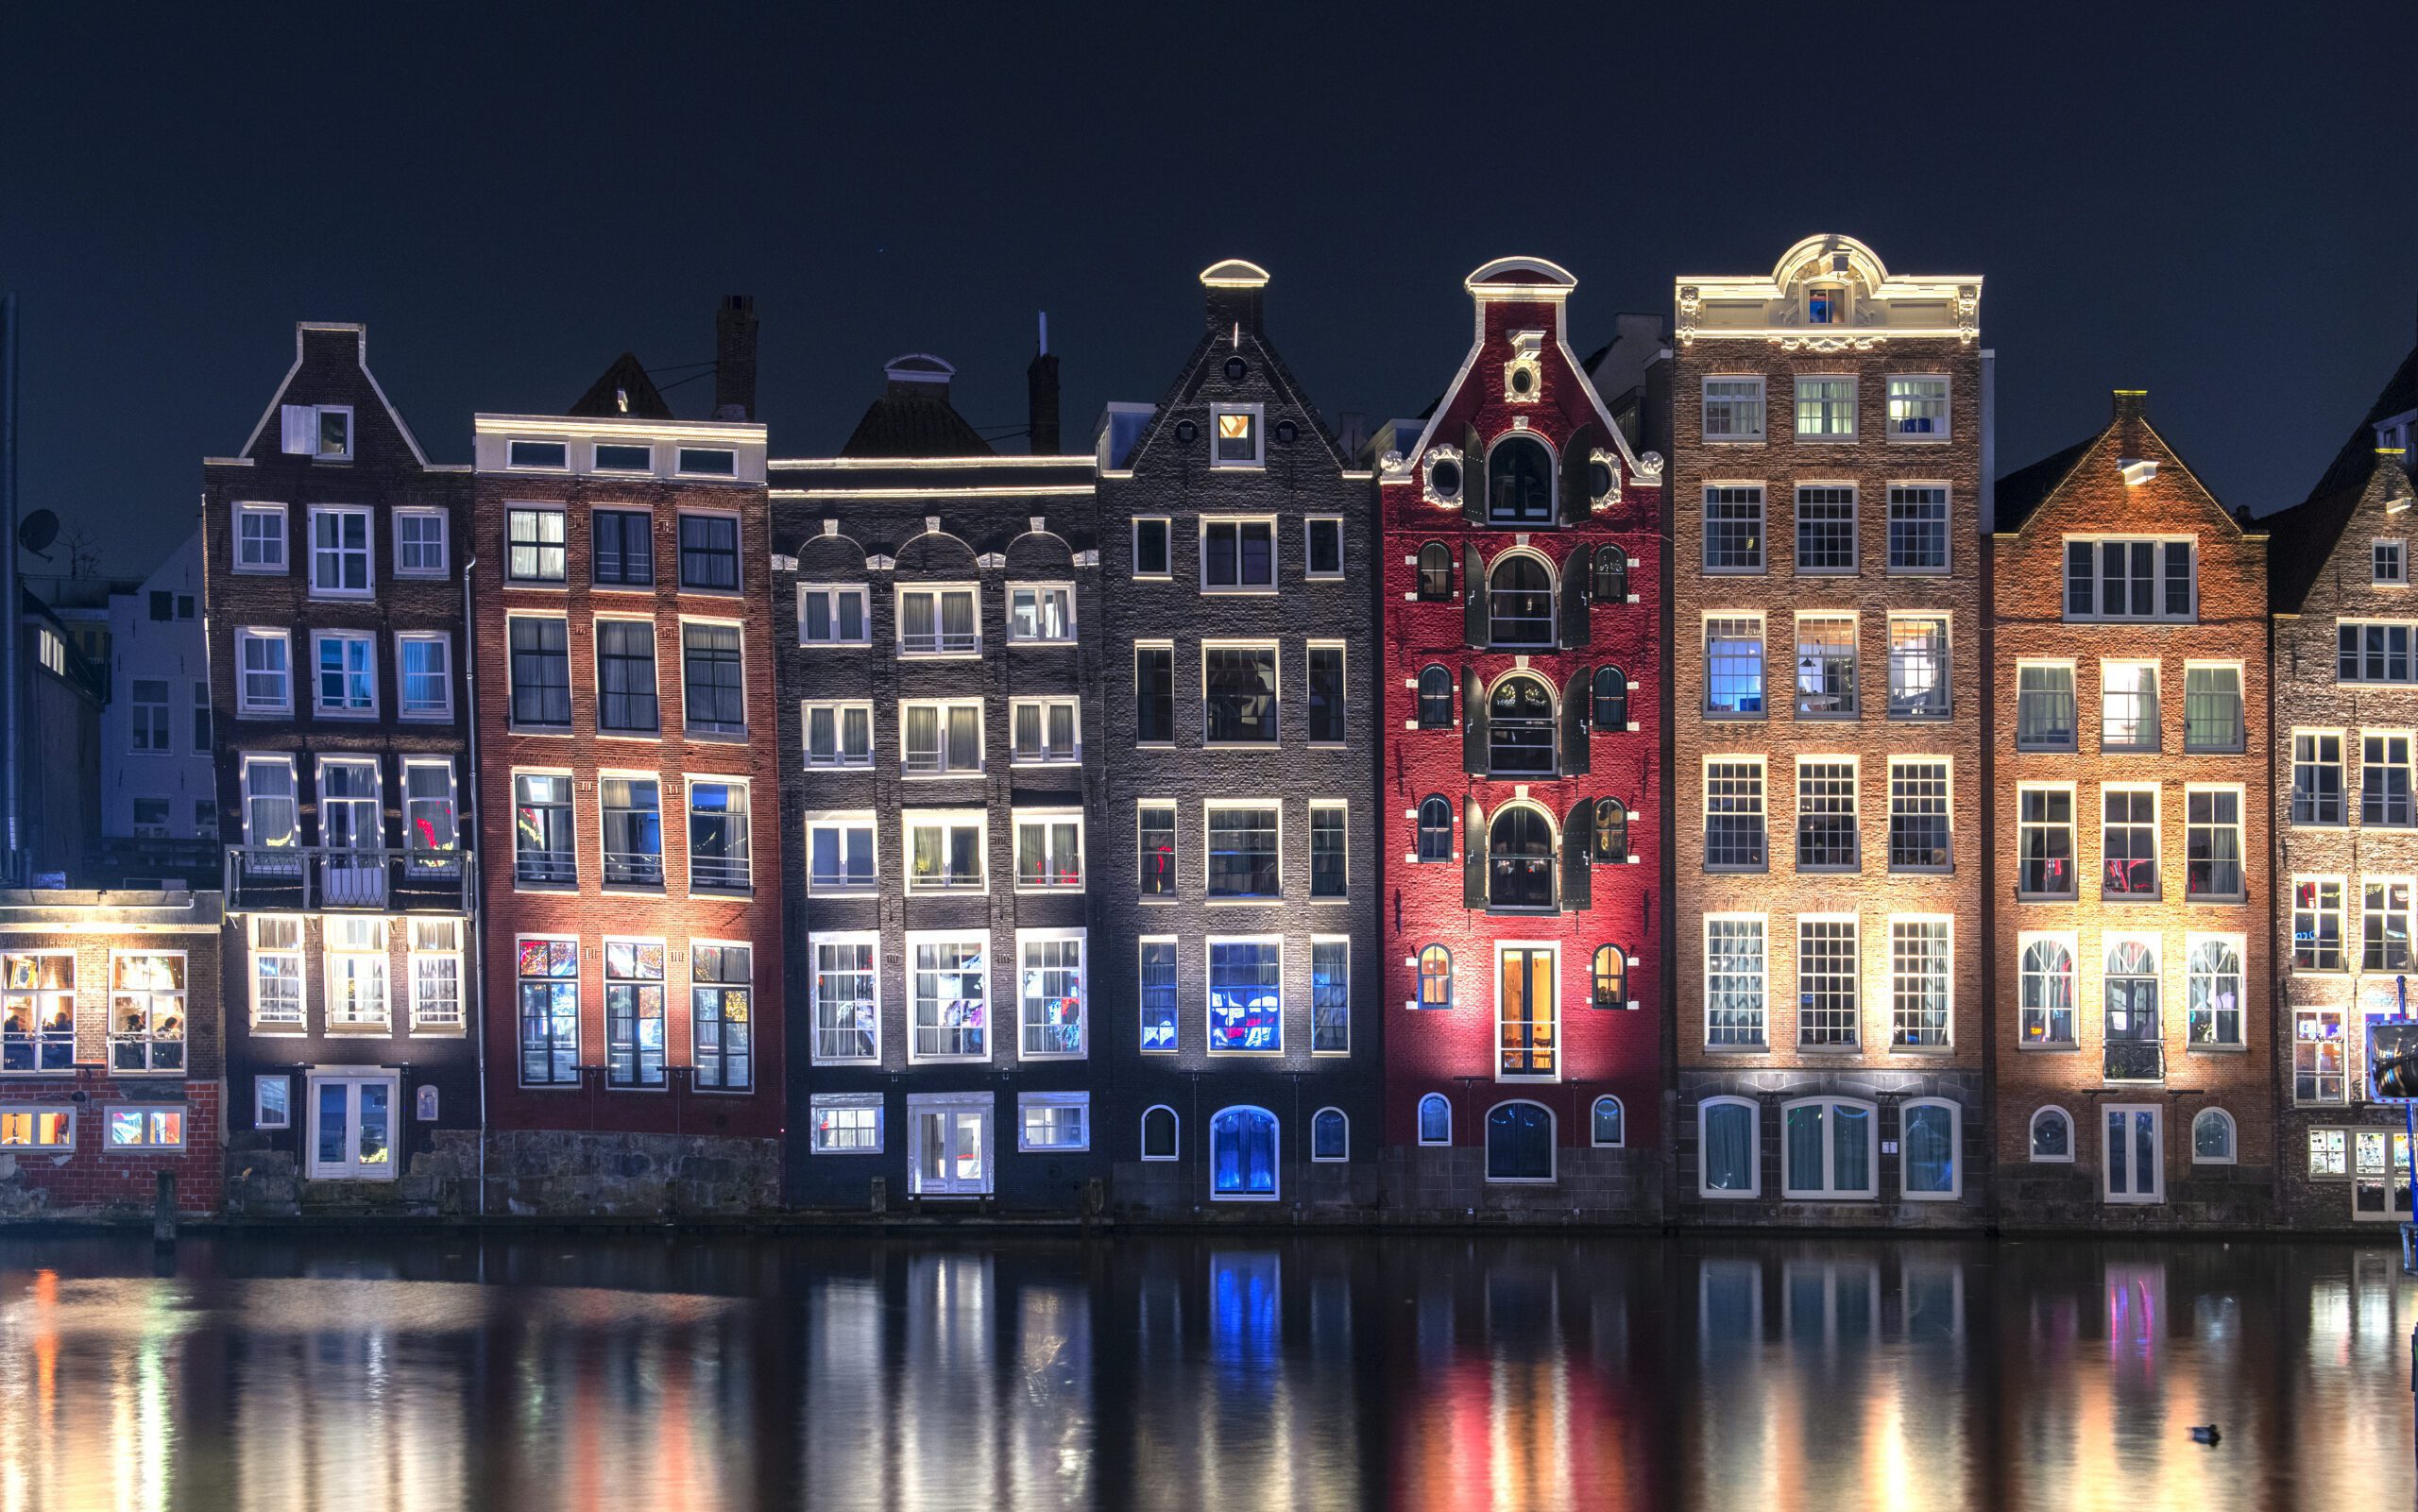 典型的阿姆斯特丹房屋倒映在水中